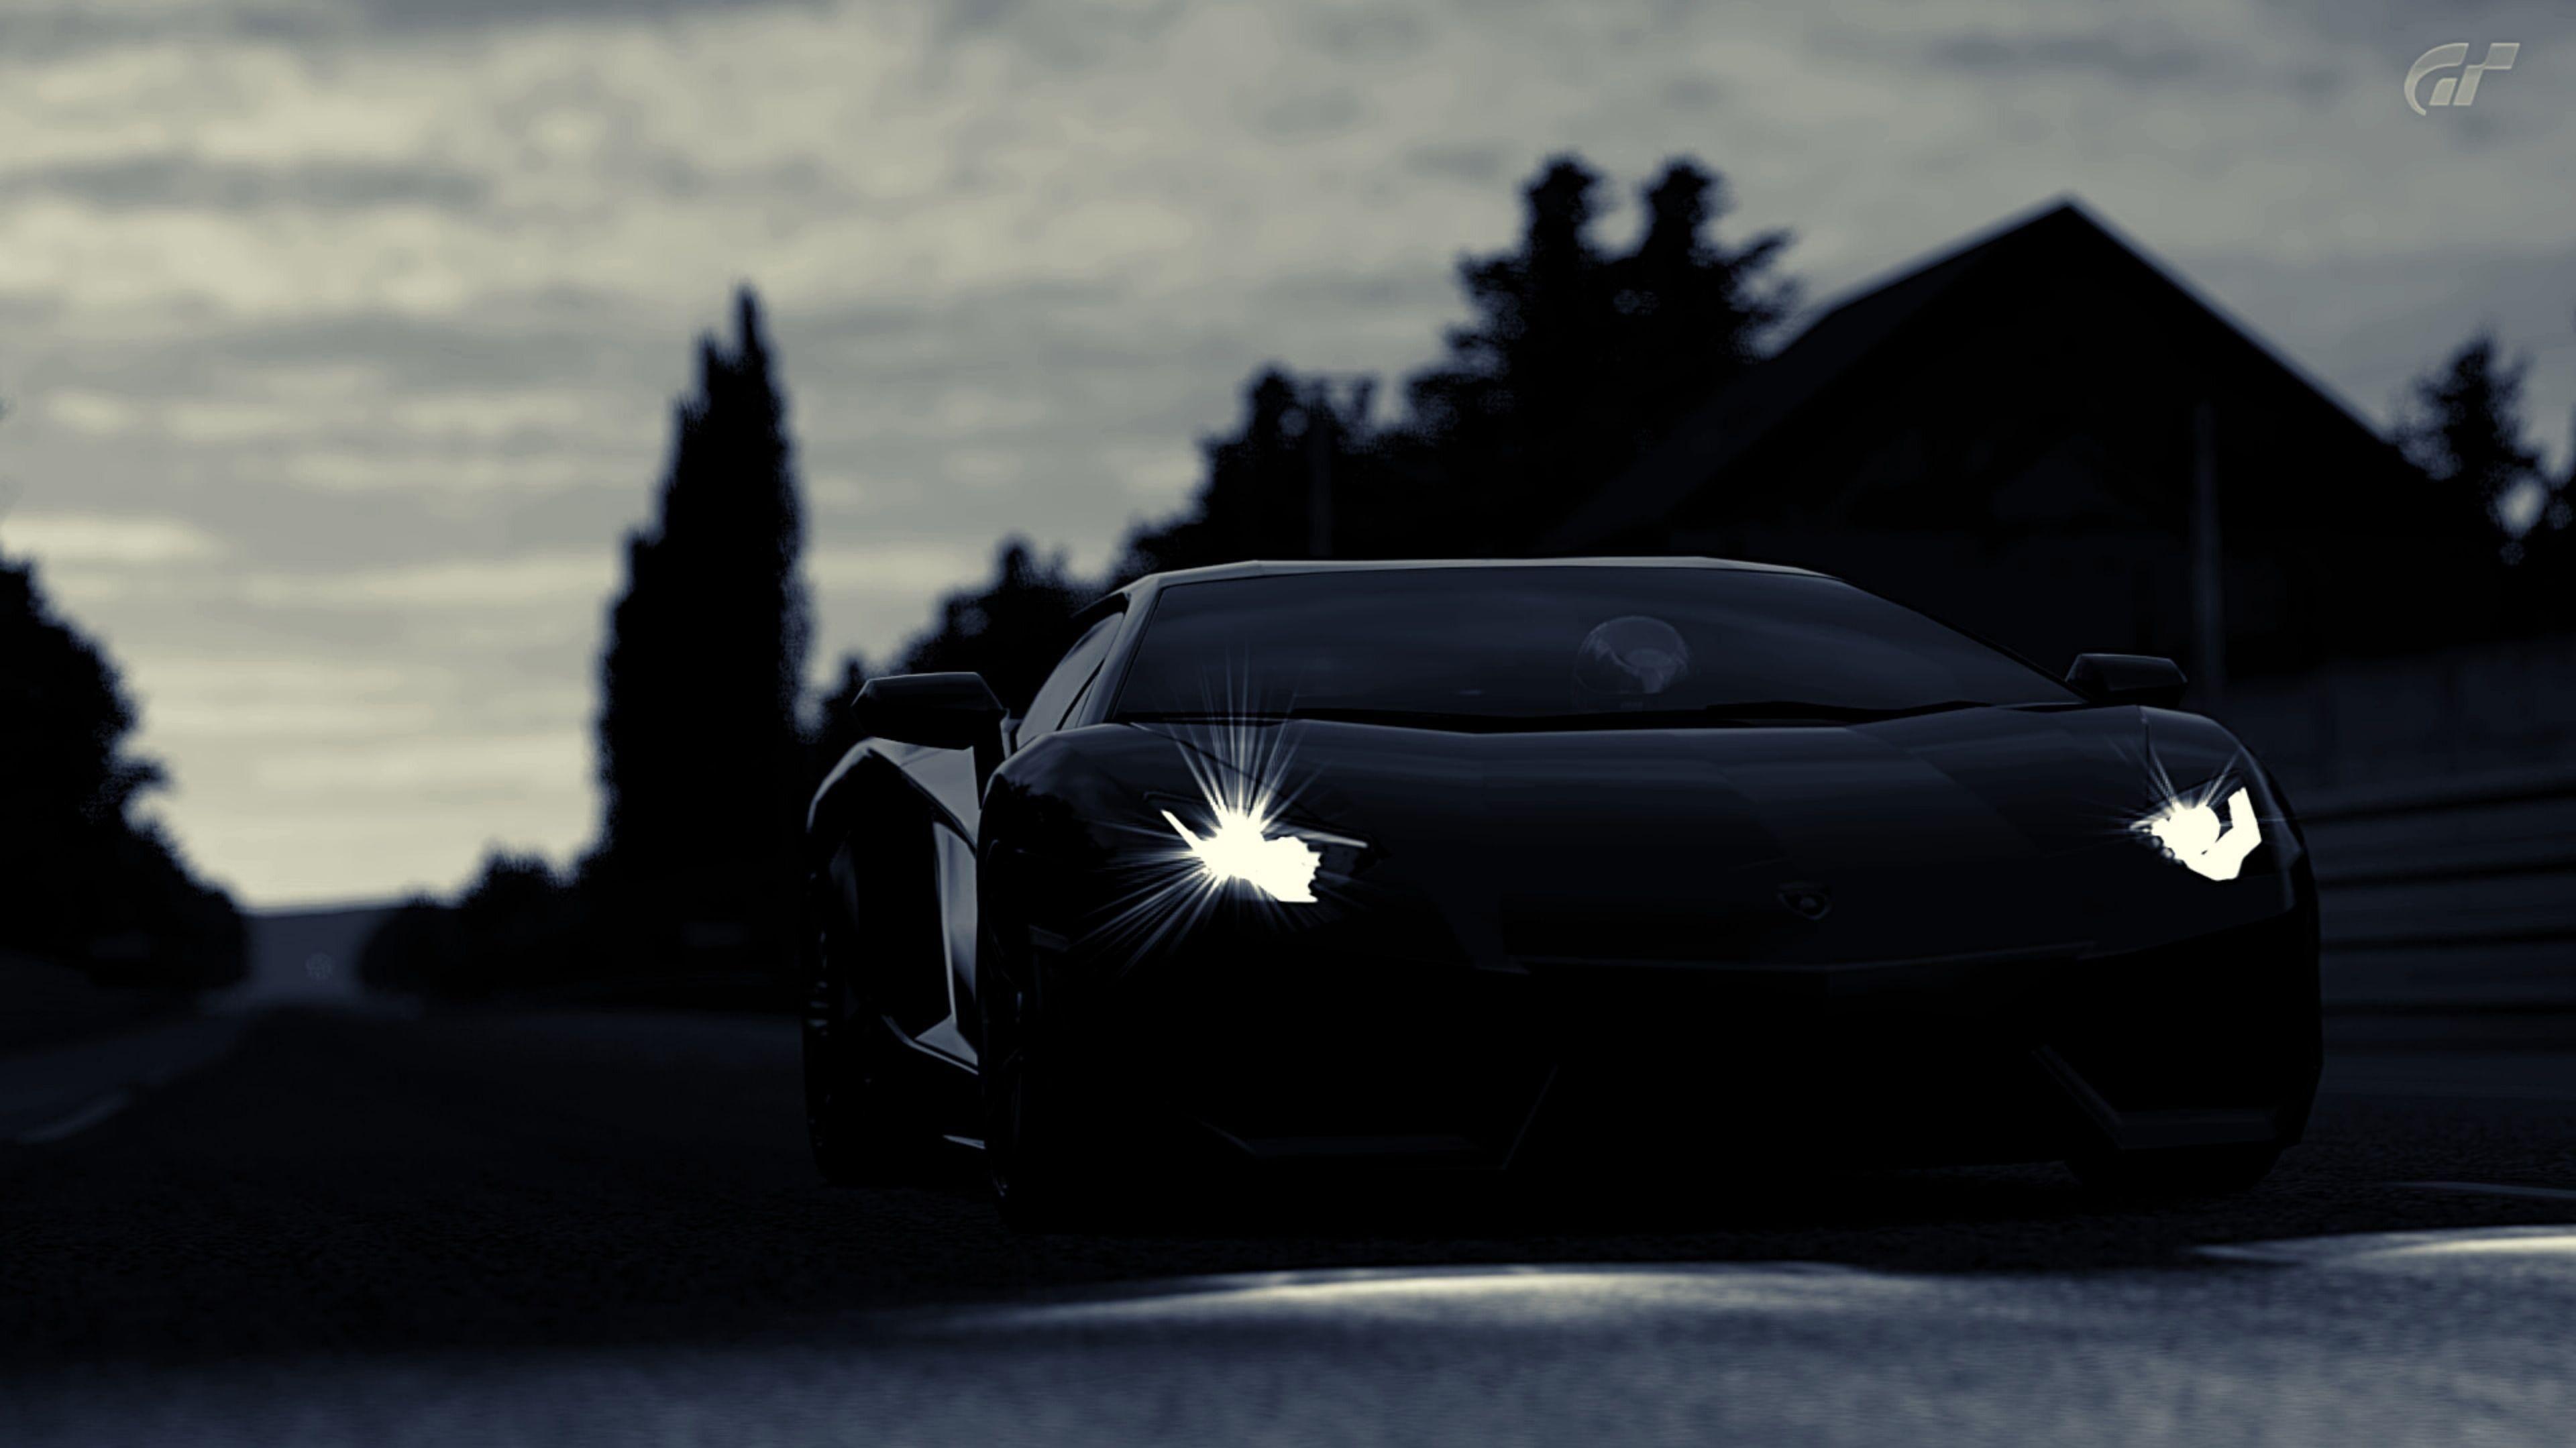 Lamborghini Dark Full Credits To U Williamc520